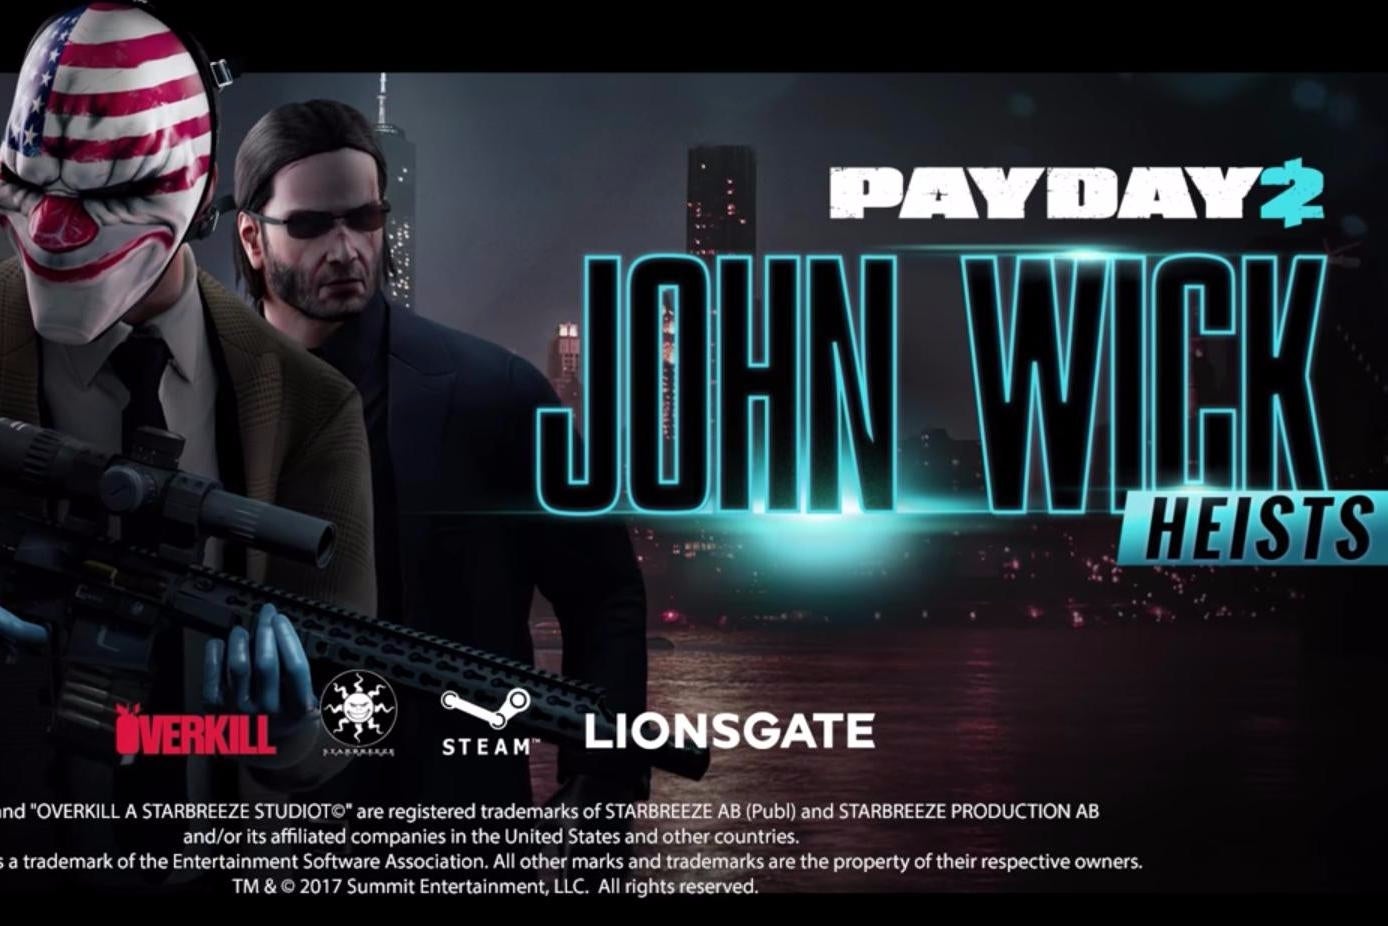 Imagen para Payday 2 se actualiza mañana con misiones de John Wick